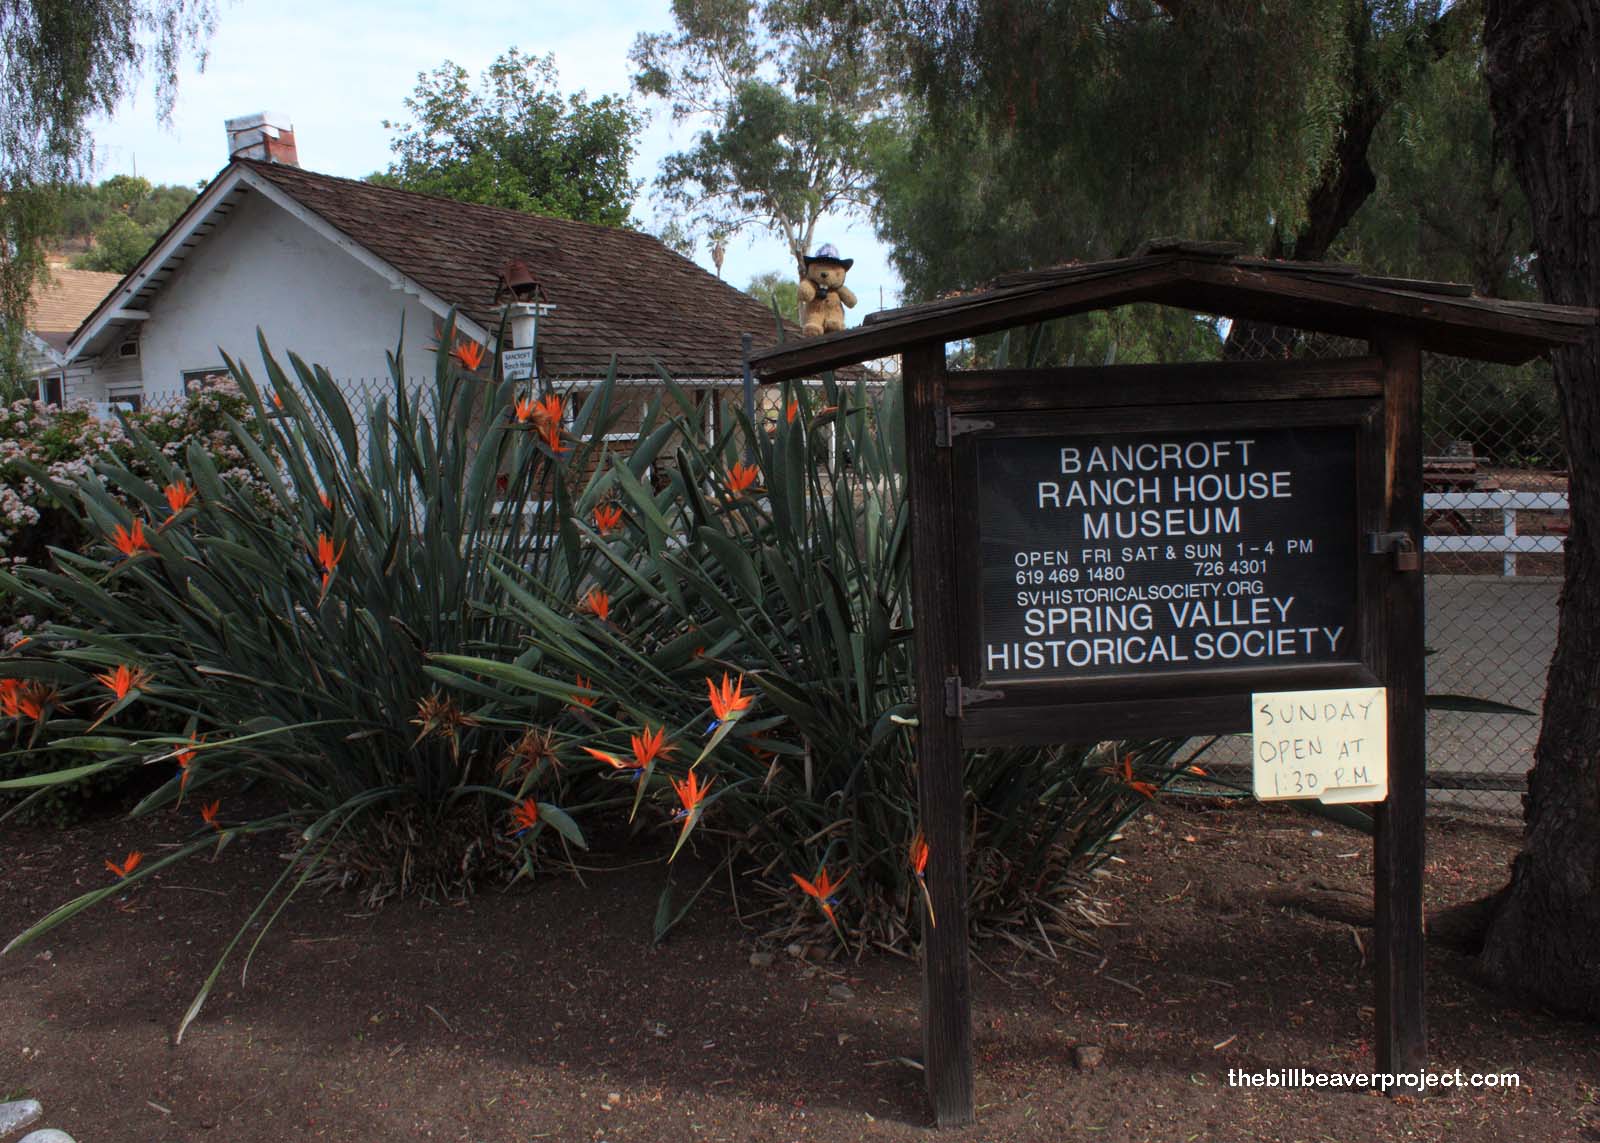 Bancroft Ranch House